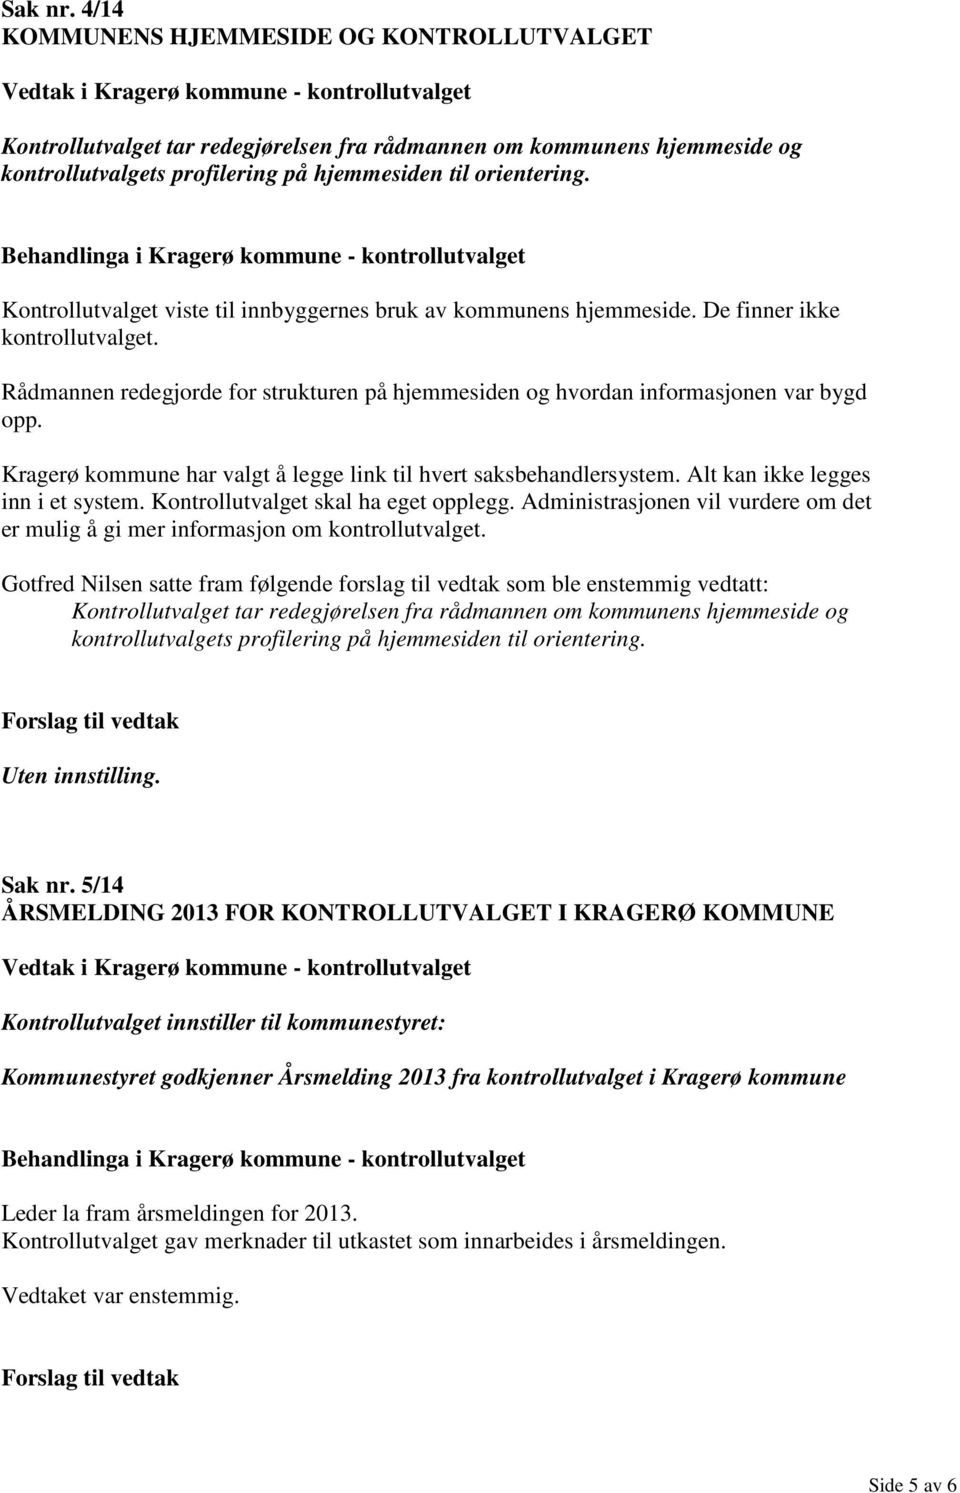 Kragerø kommune har valgt å legge link til hvert saksbehandlersystem. Alt kan ikke legges inn i et system. Kontrollutvalget skal ha eget opplegg.